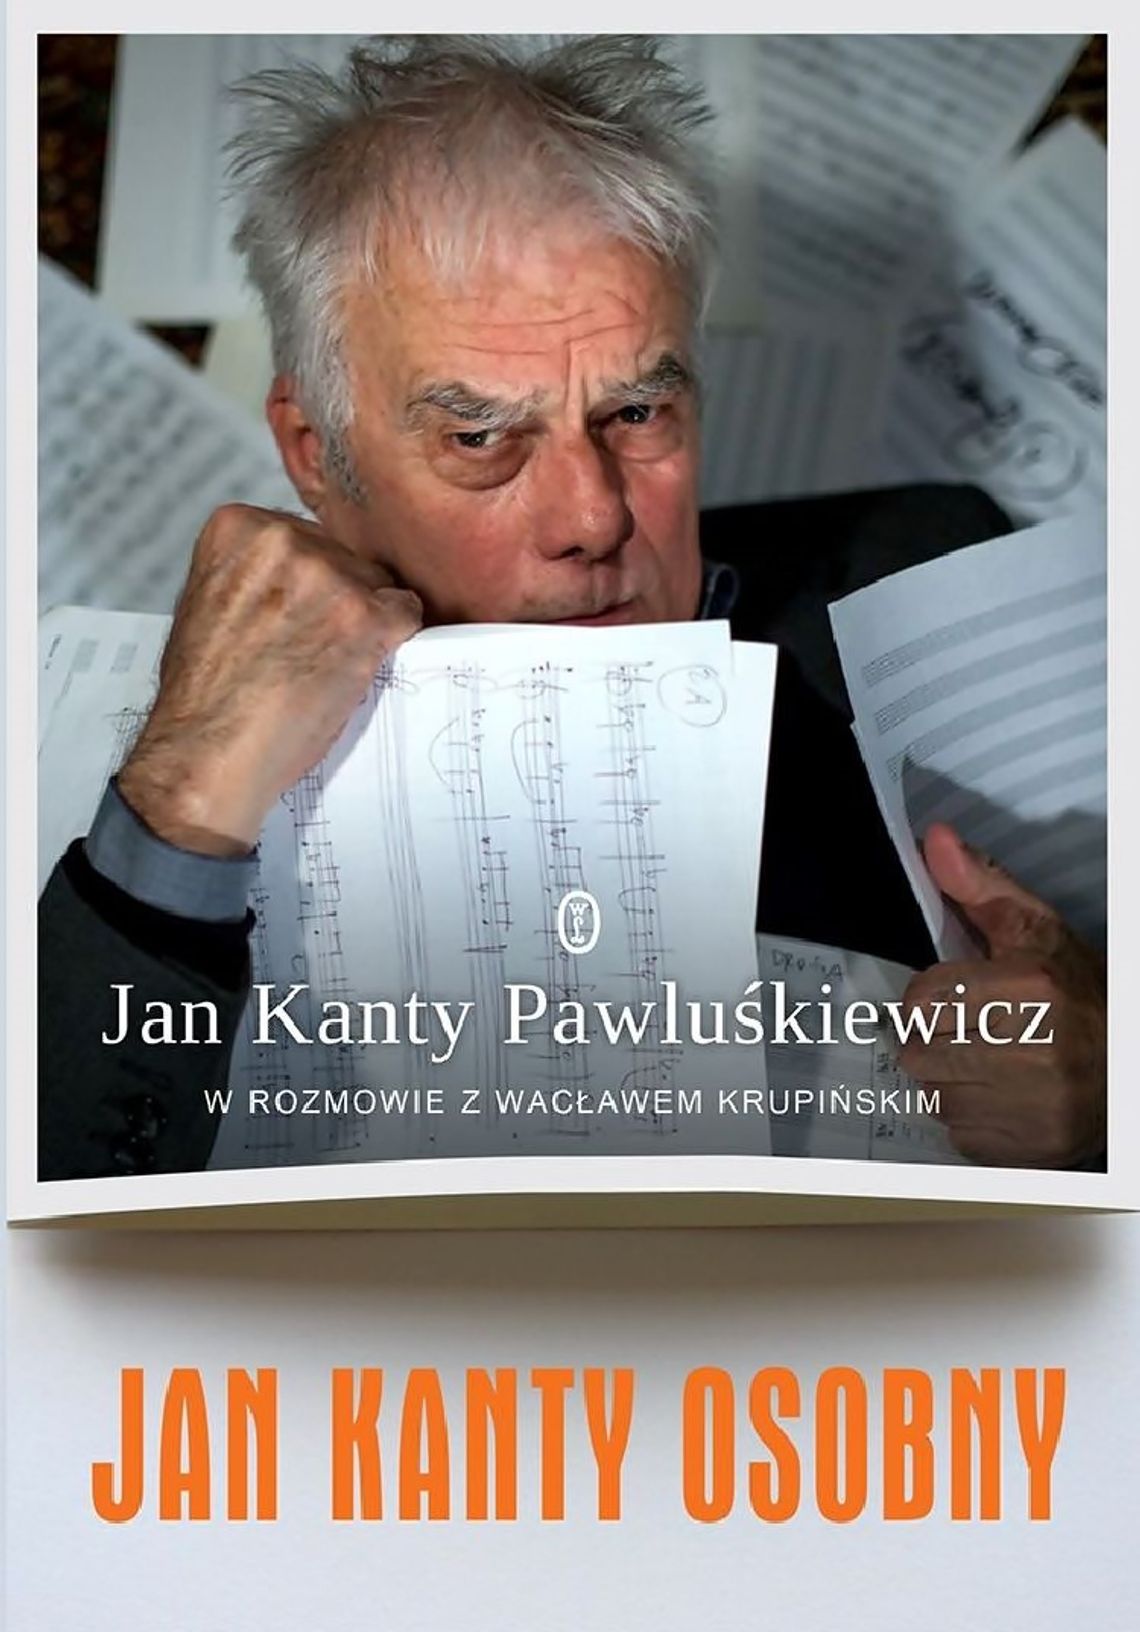 Jan Kanty Pawluśkiewicz i  Wacław Krupiński w bydgoskiej bibliotece 